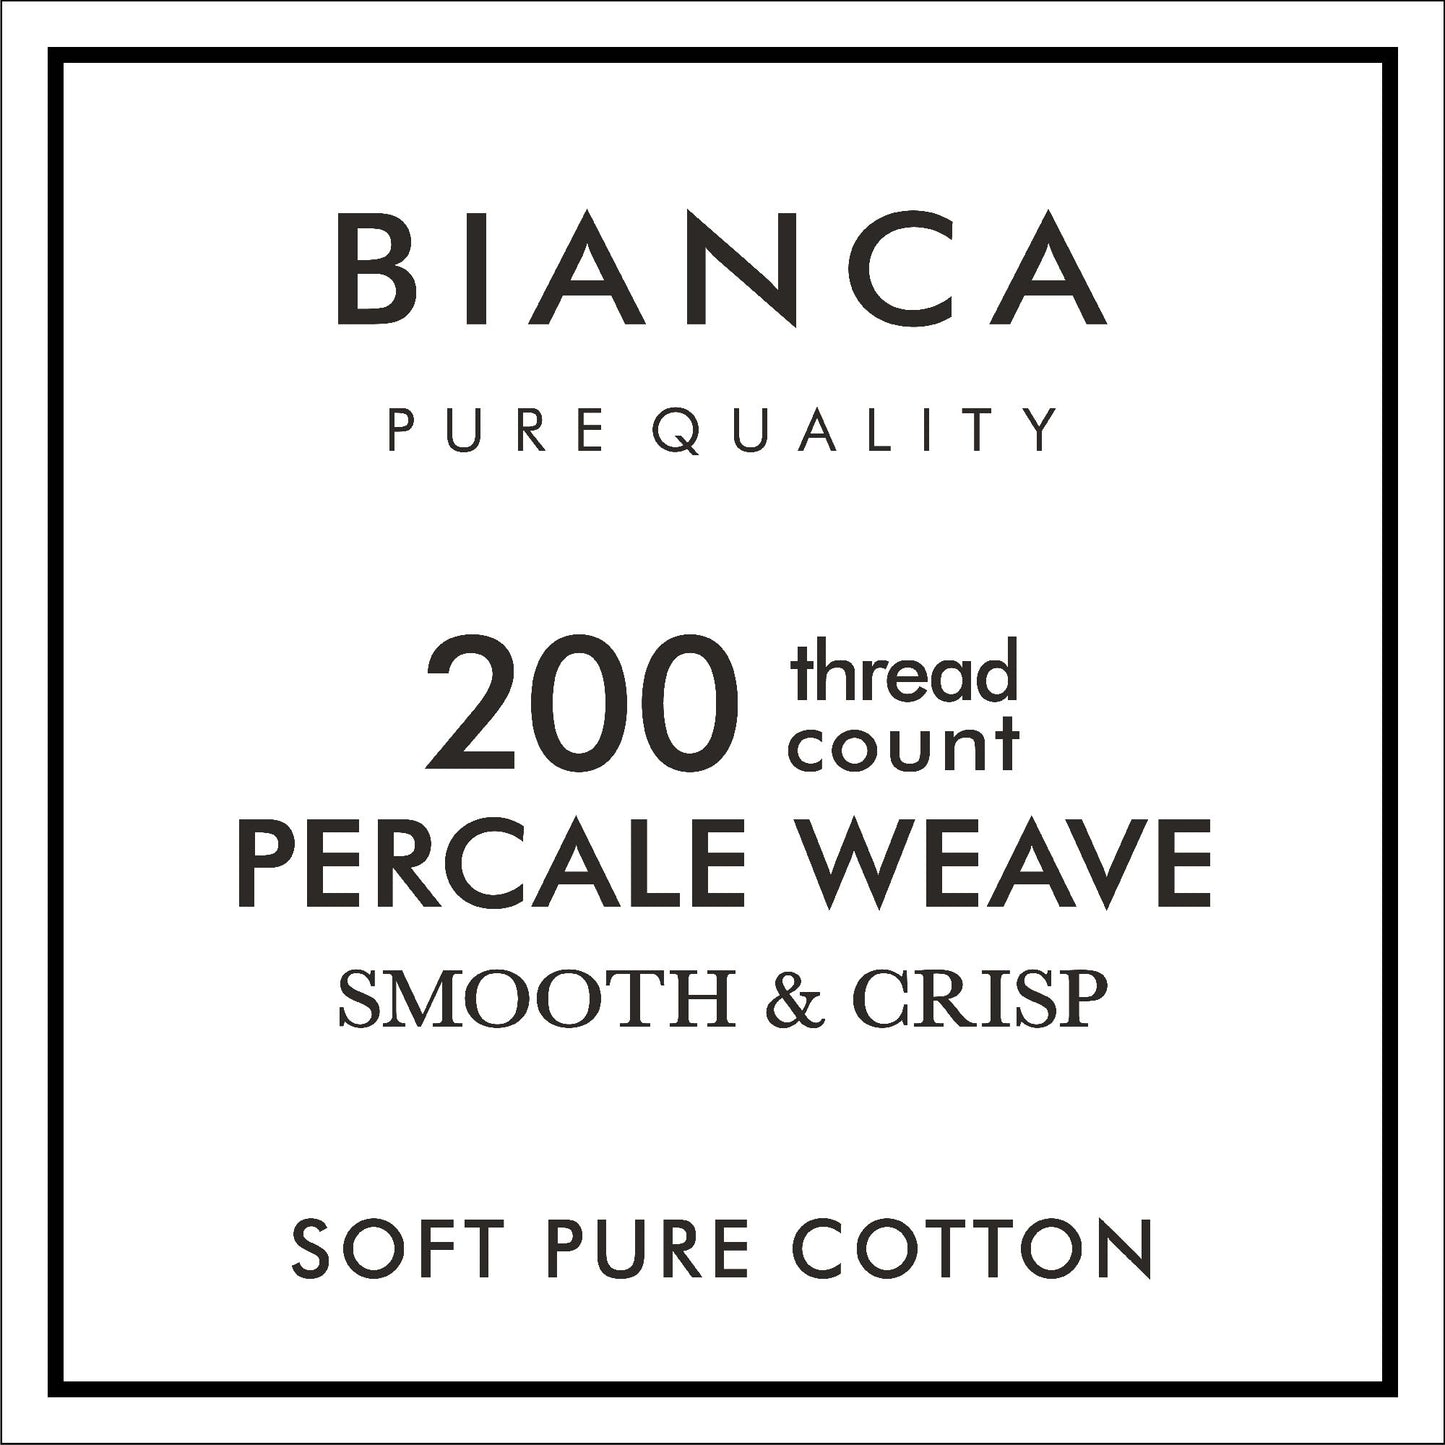 Bianca White 200TC 100% Cotton Percale Oxford Pillowcase Pair